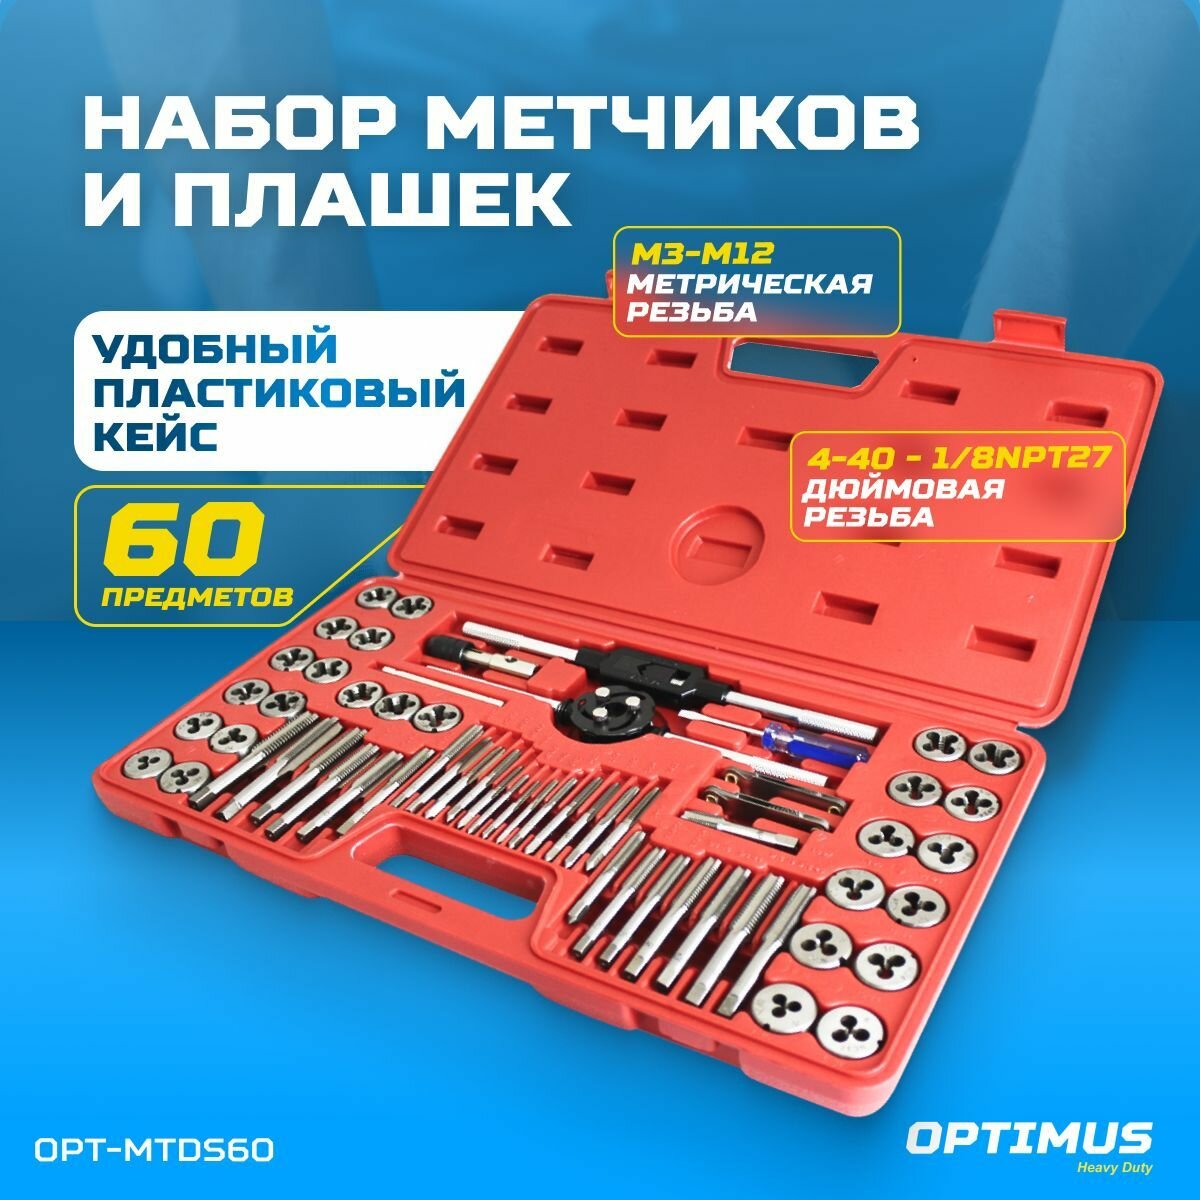 OPT-MTDS60 Набор метчиков и плашек М3 - 12, 4-40 - 1/8NPT27, 60 предм, метрическая и дюймовая резьба